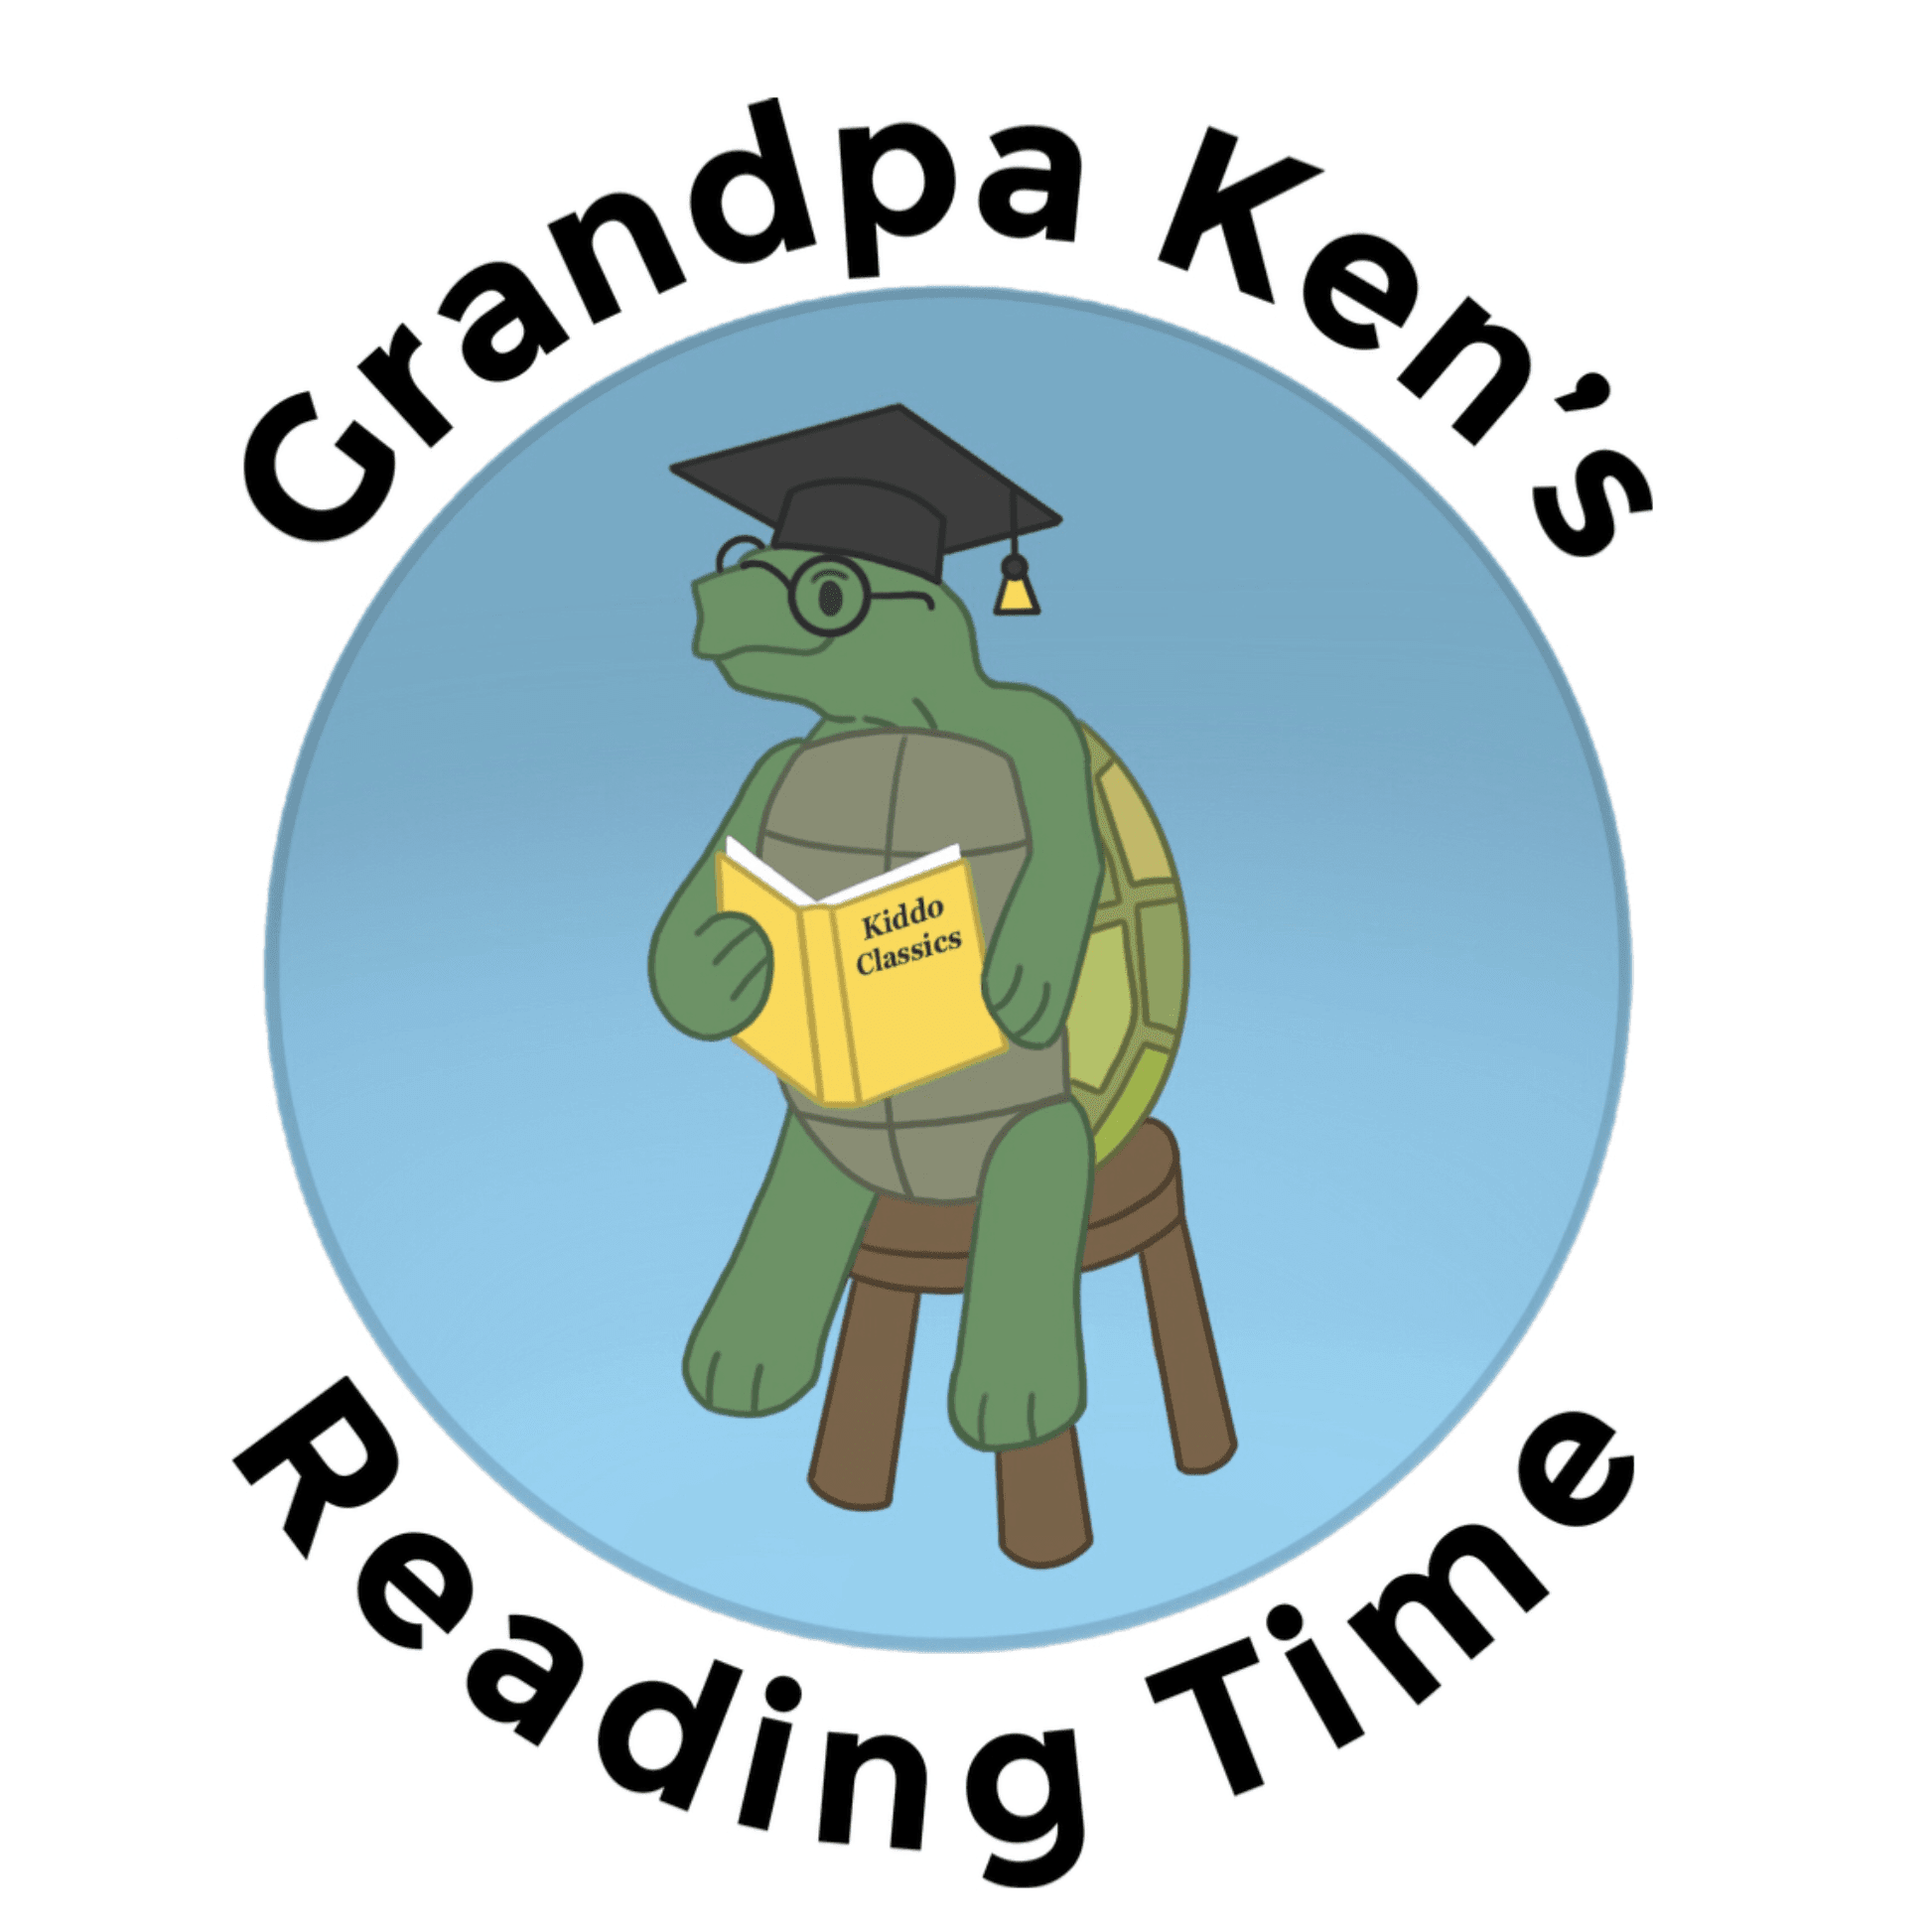 Grandpa Ken's Story Time